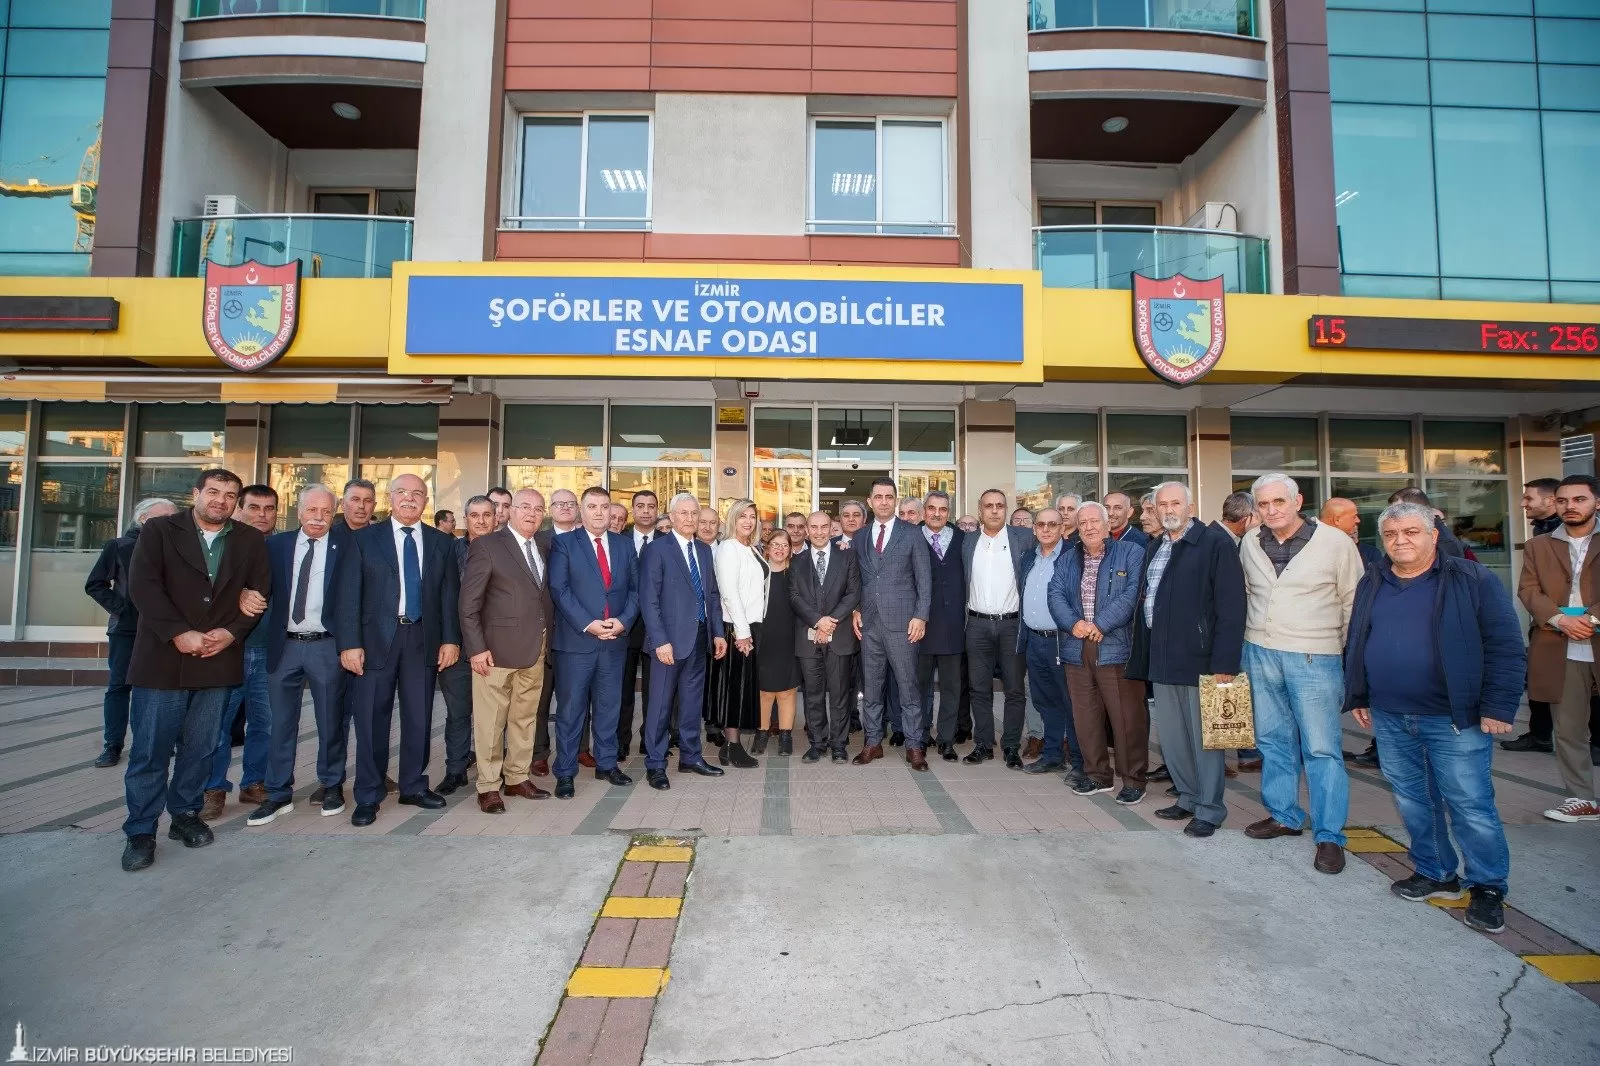  İzmir Büyükşehir Belediye Başkanı Tunç Soyer, İzmir Şoförler ve Otomobilciler Esnaf Odası'nı ziyaret ederek büyük bir ilgi ve alkışla karşılandı